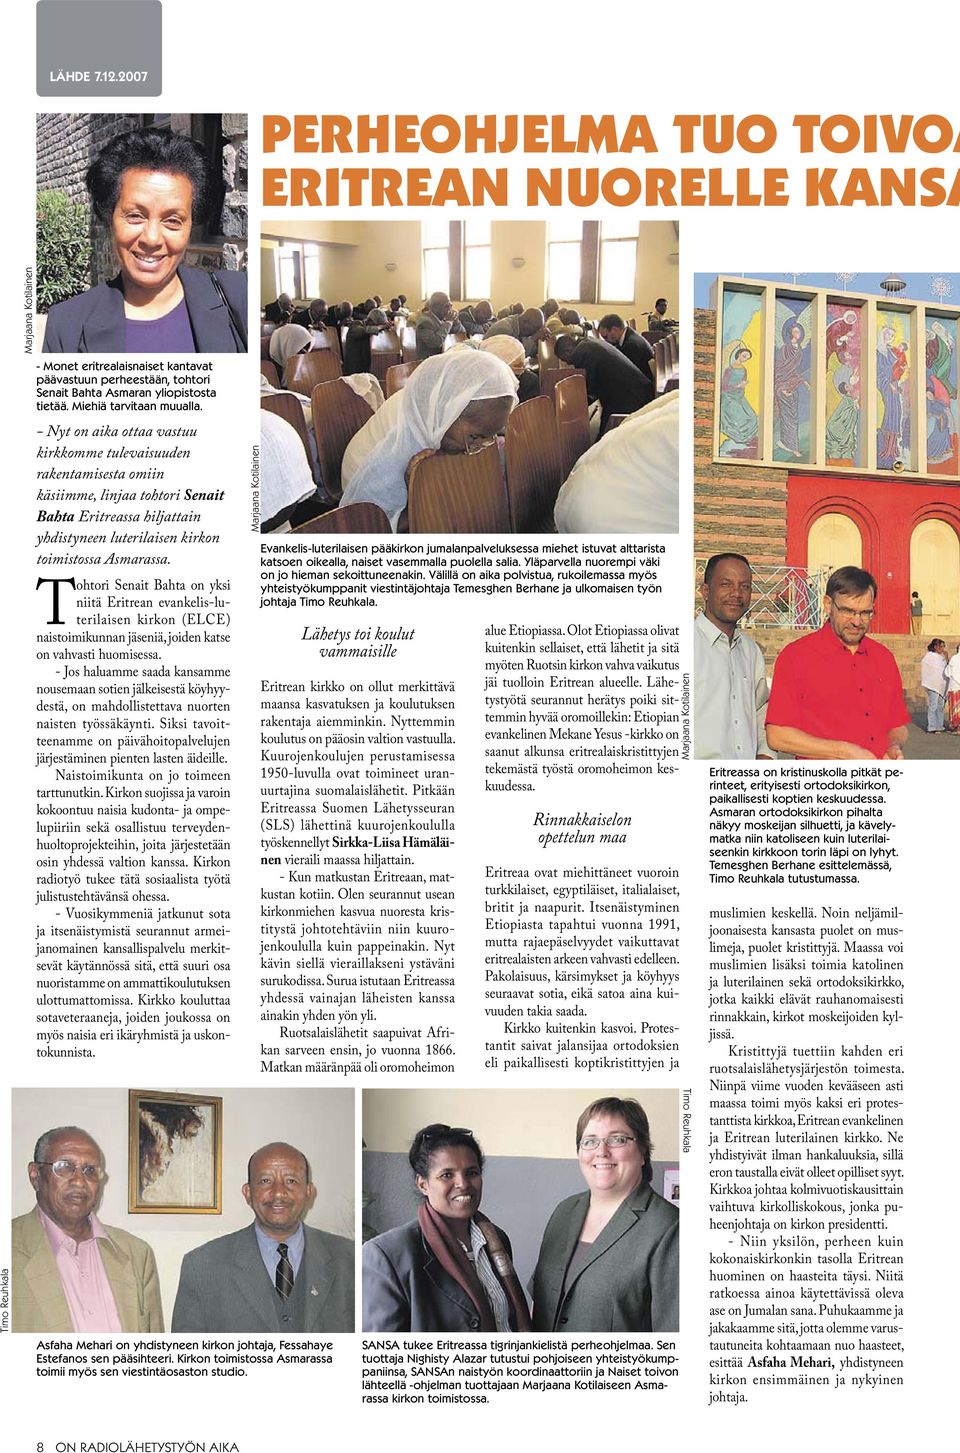 Tohtori Senait Bahta on yksi niitä Eritrean evankelis-luterilaisen kirkon (ELCE) naistoimikunnan jäseniä, joiden katse on vahvasti huomisessa.